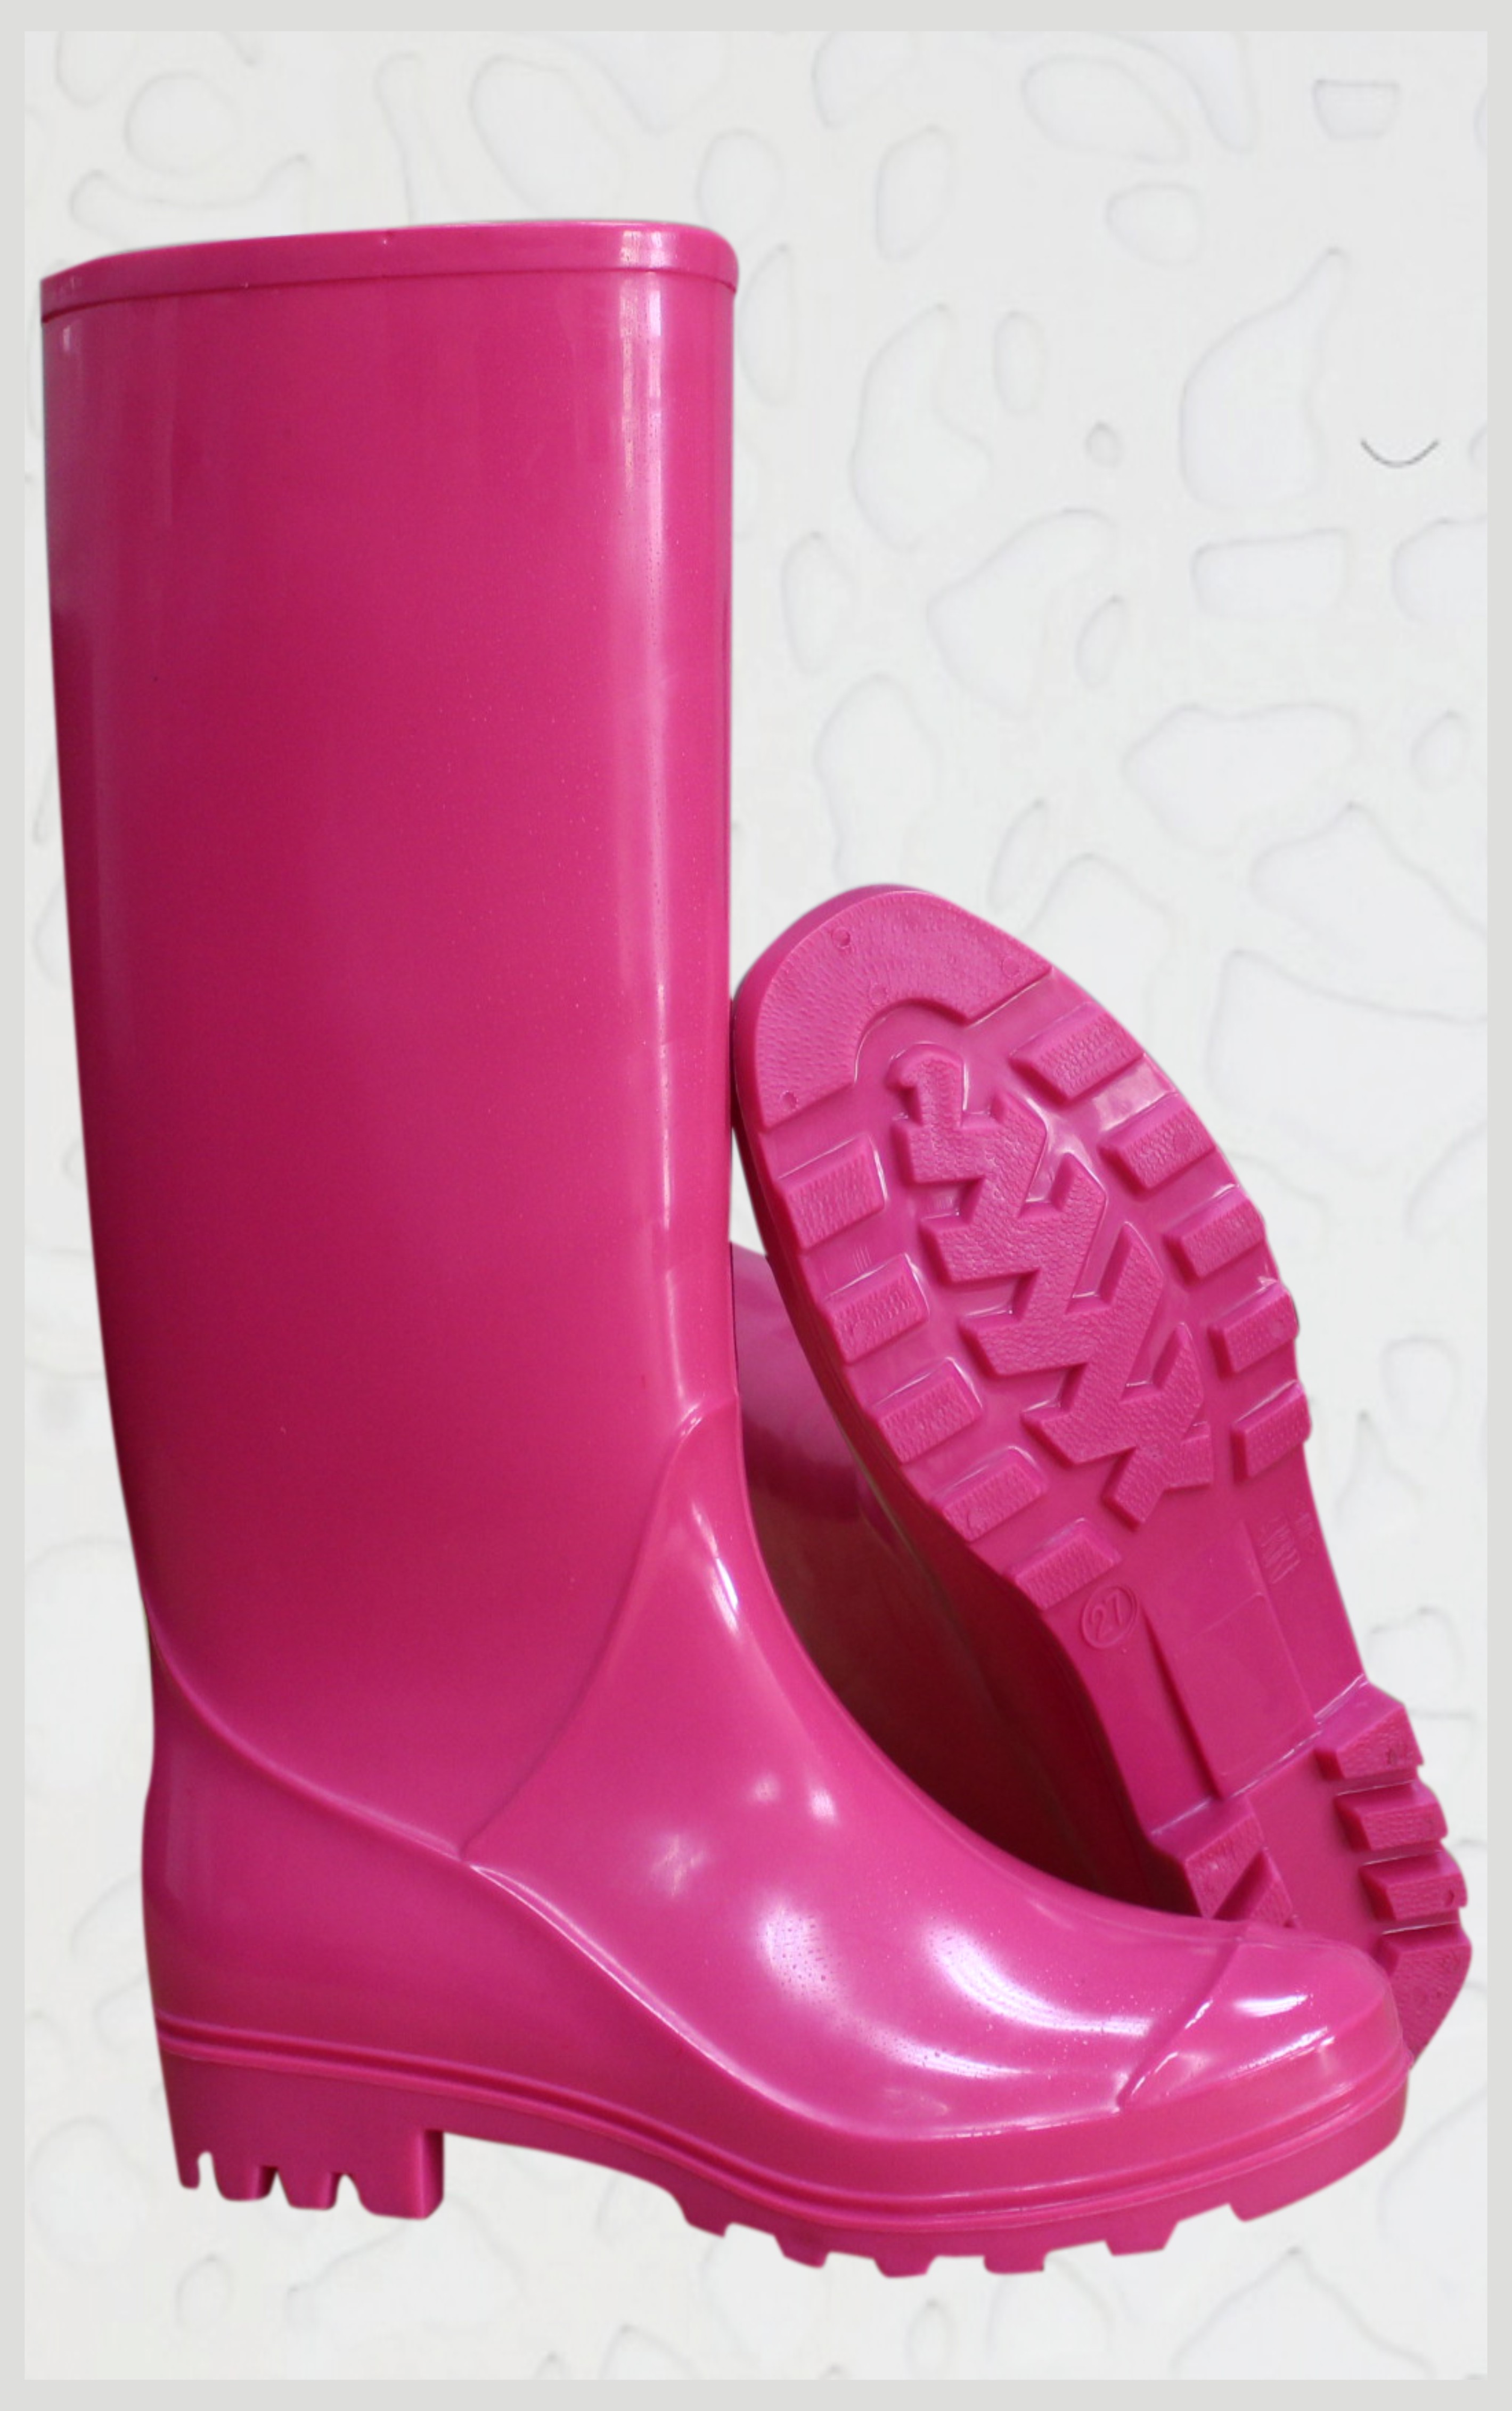 AN202全红女式雨鞋，女式雨鞋生产厂家，温州女式雨鞋生产厂家，湖州女式雨鞋生产厂家